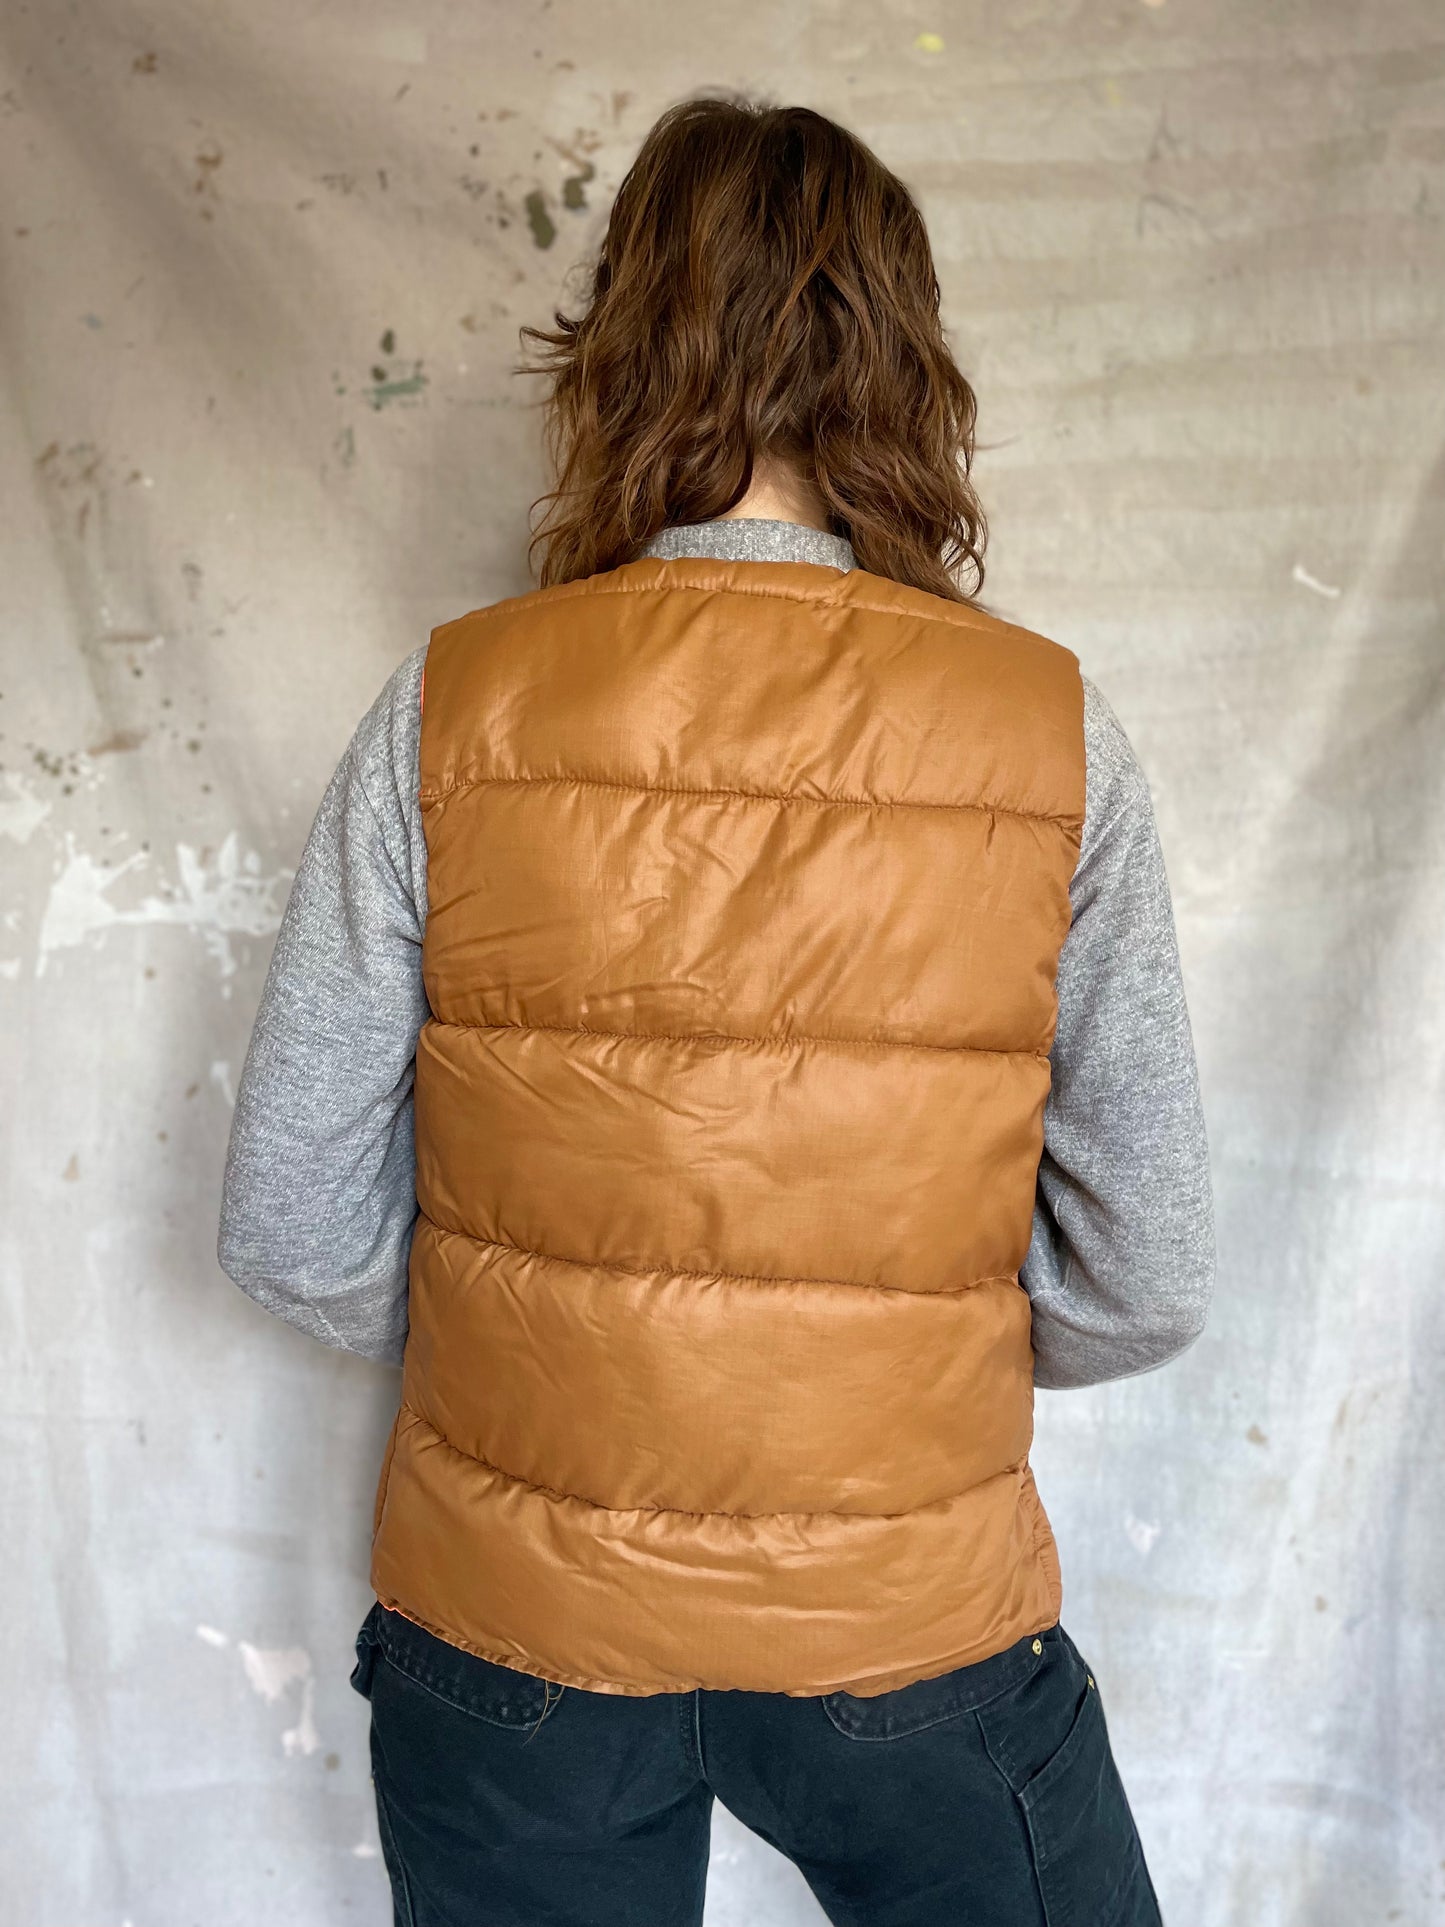 80s Reversible Light Brown/Safety Orange Vest